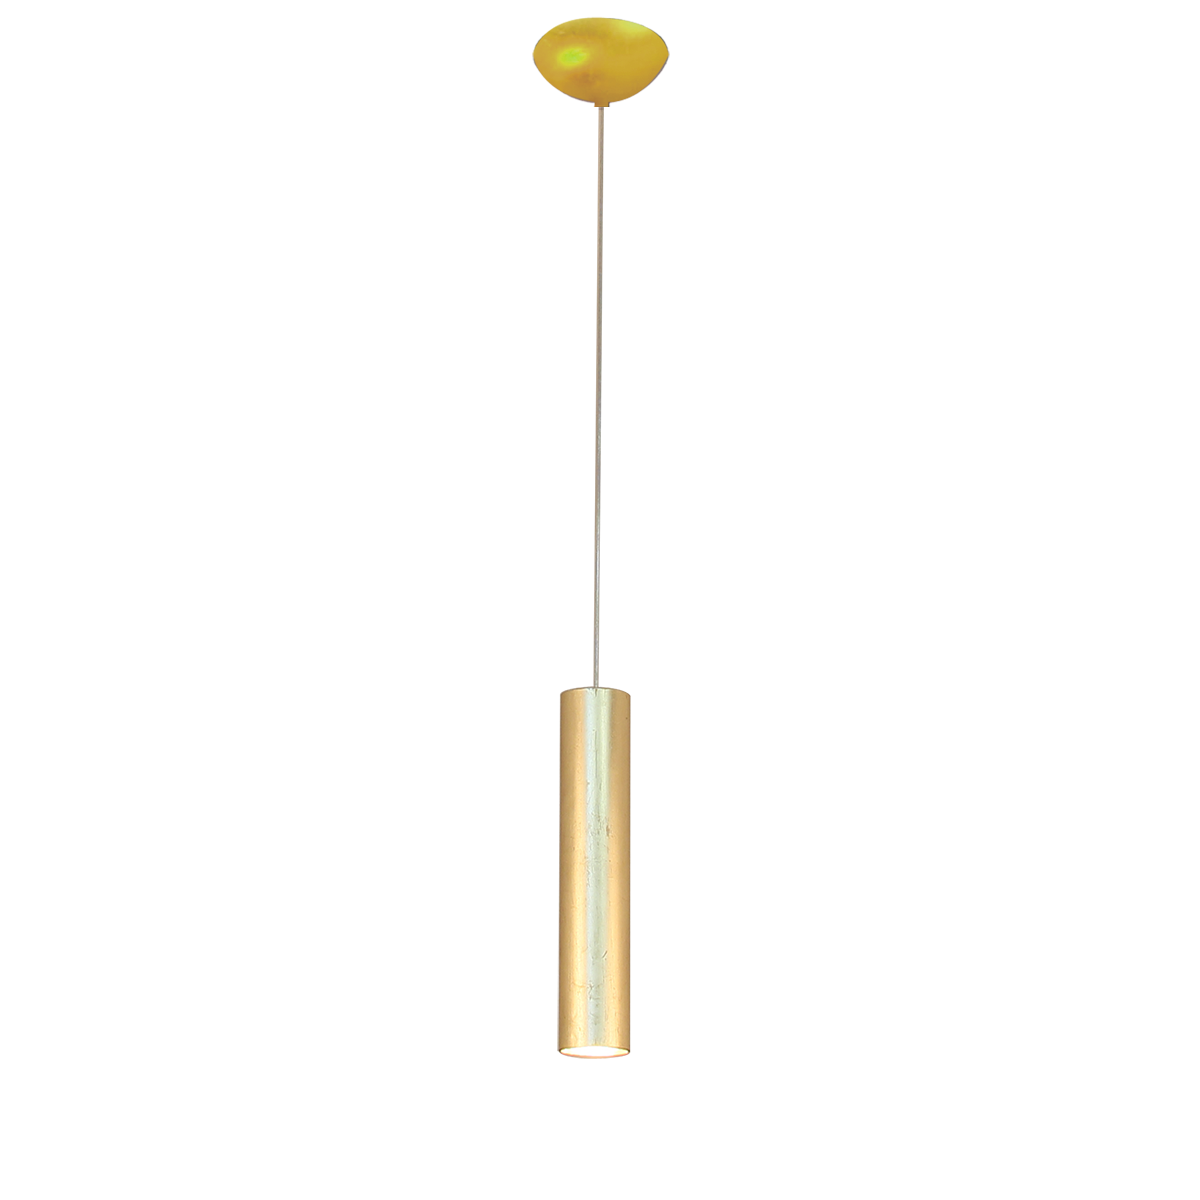 Solo exclusiv Pendel Pipe D=6cm, GU10  Blattgold Innen gold lackiert oder nach Wahl mit Textilkabel Menzel Landhaus